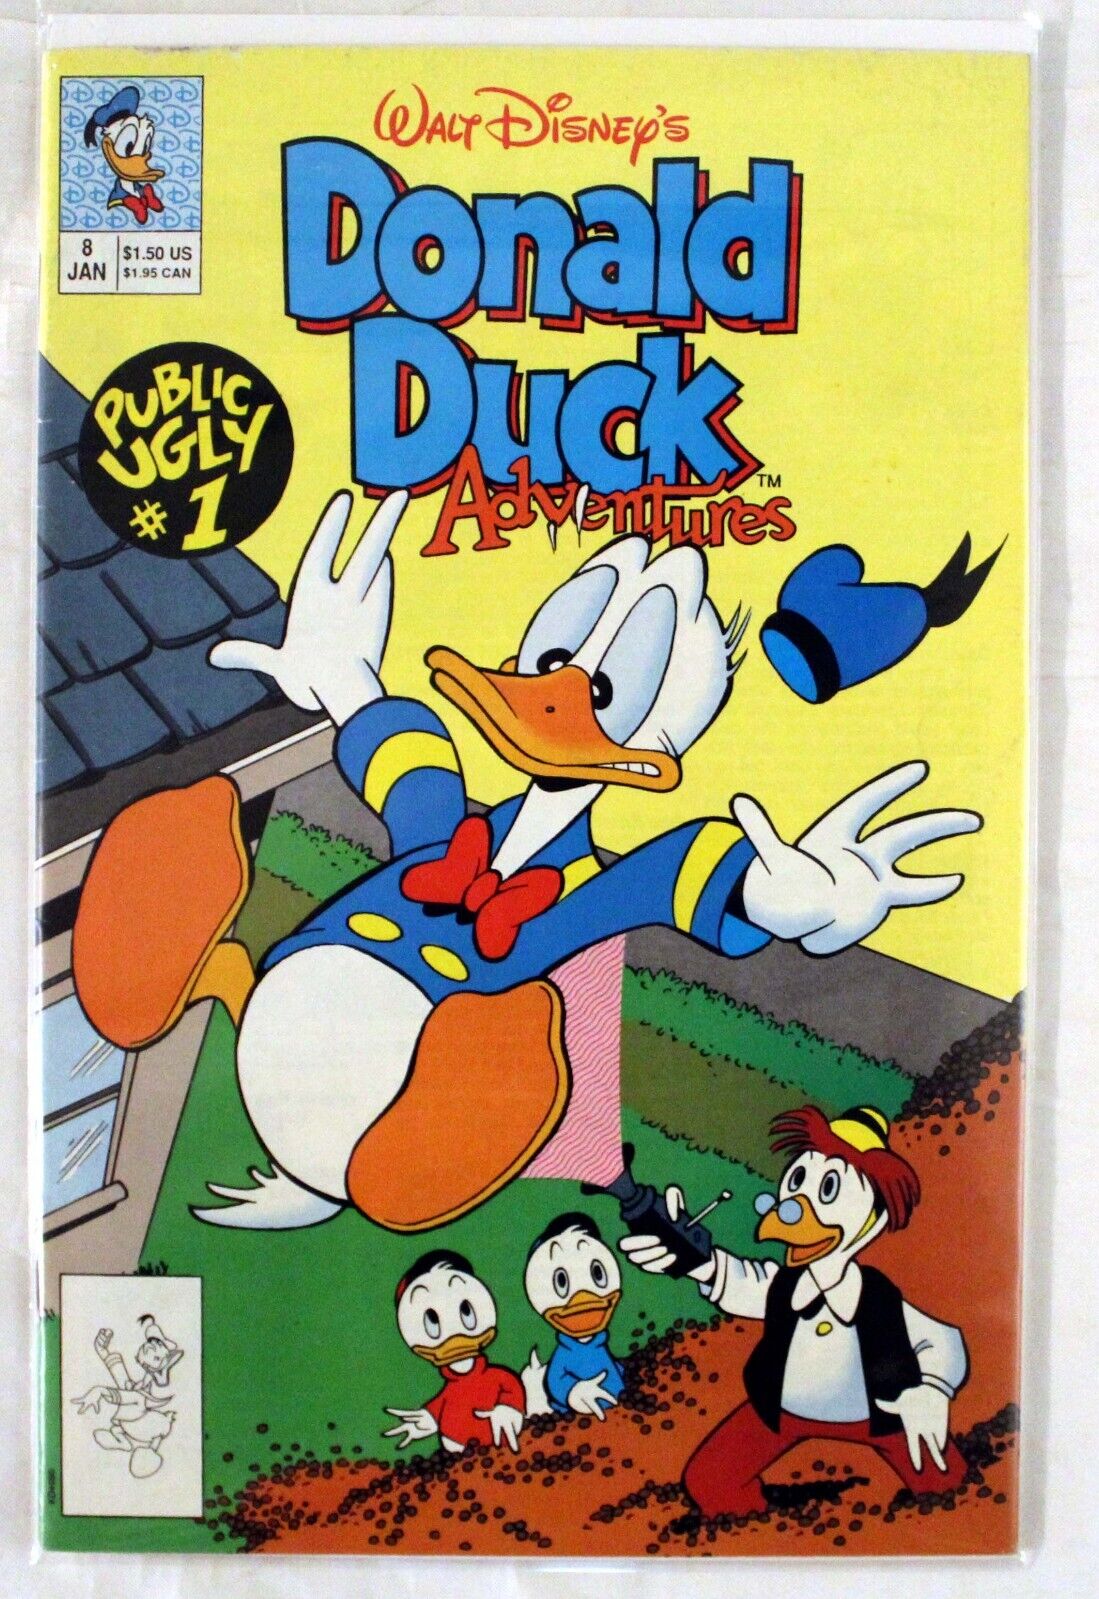 Walt Disney's Donald Duck Adventures Public Ugly #1 #8 Jan. 1991 LOOK!